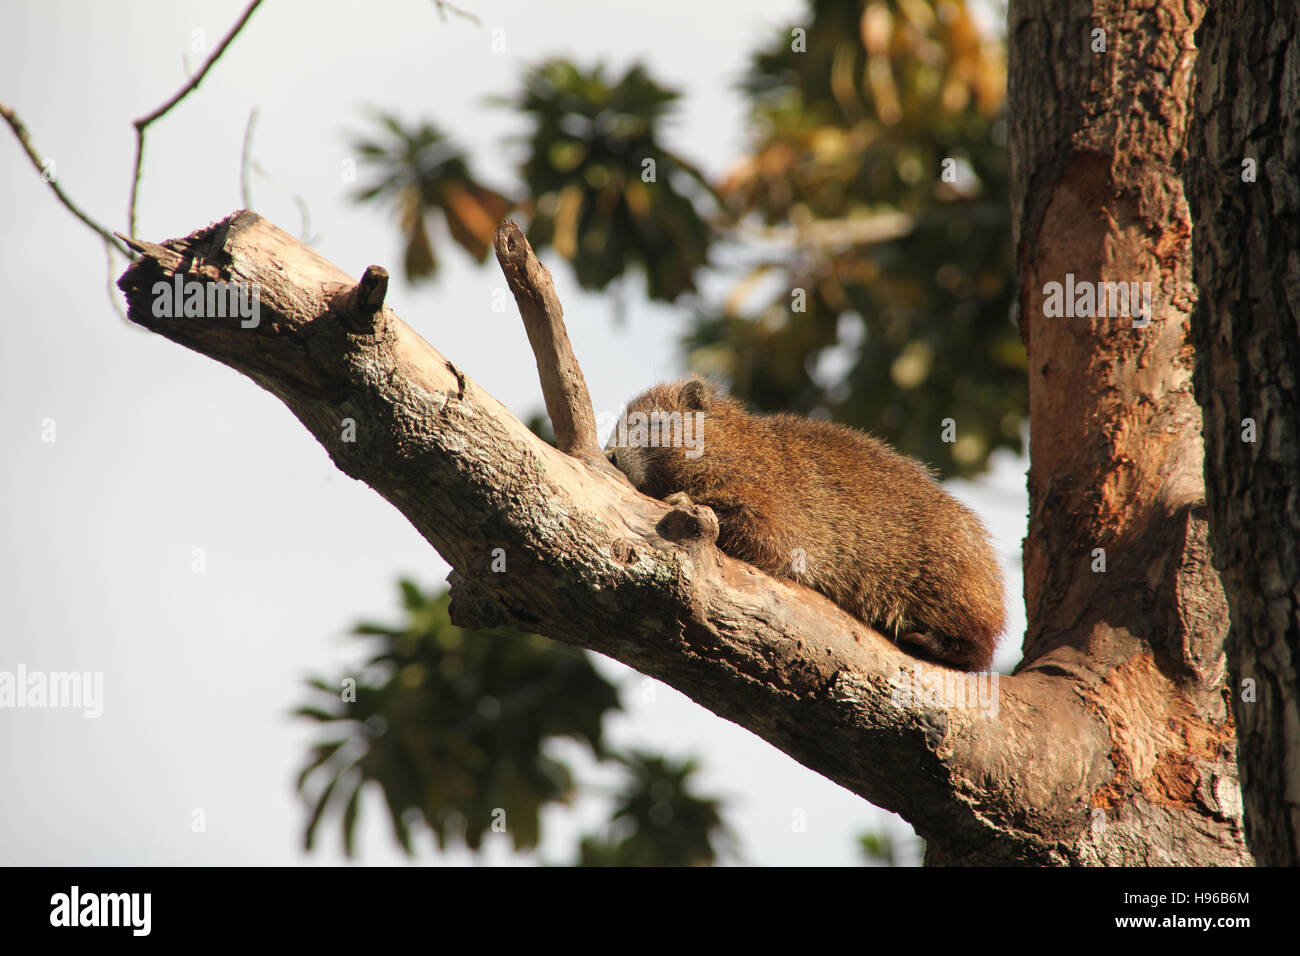 Ein Baumratte - Desmarest Baumratte (Capromys Pilorides), auch bekannt als die kubanischen Baumratte, sitzen in ihren Baum, Guama, Kuba, Karibik. Stockfoto